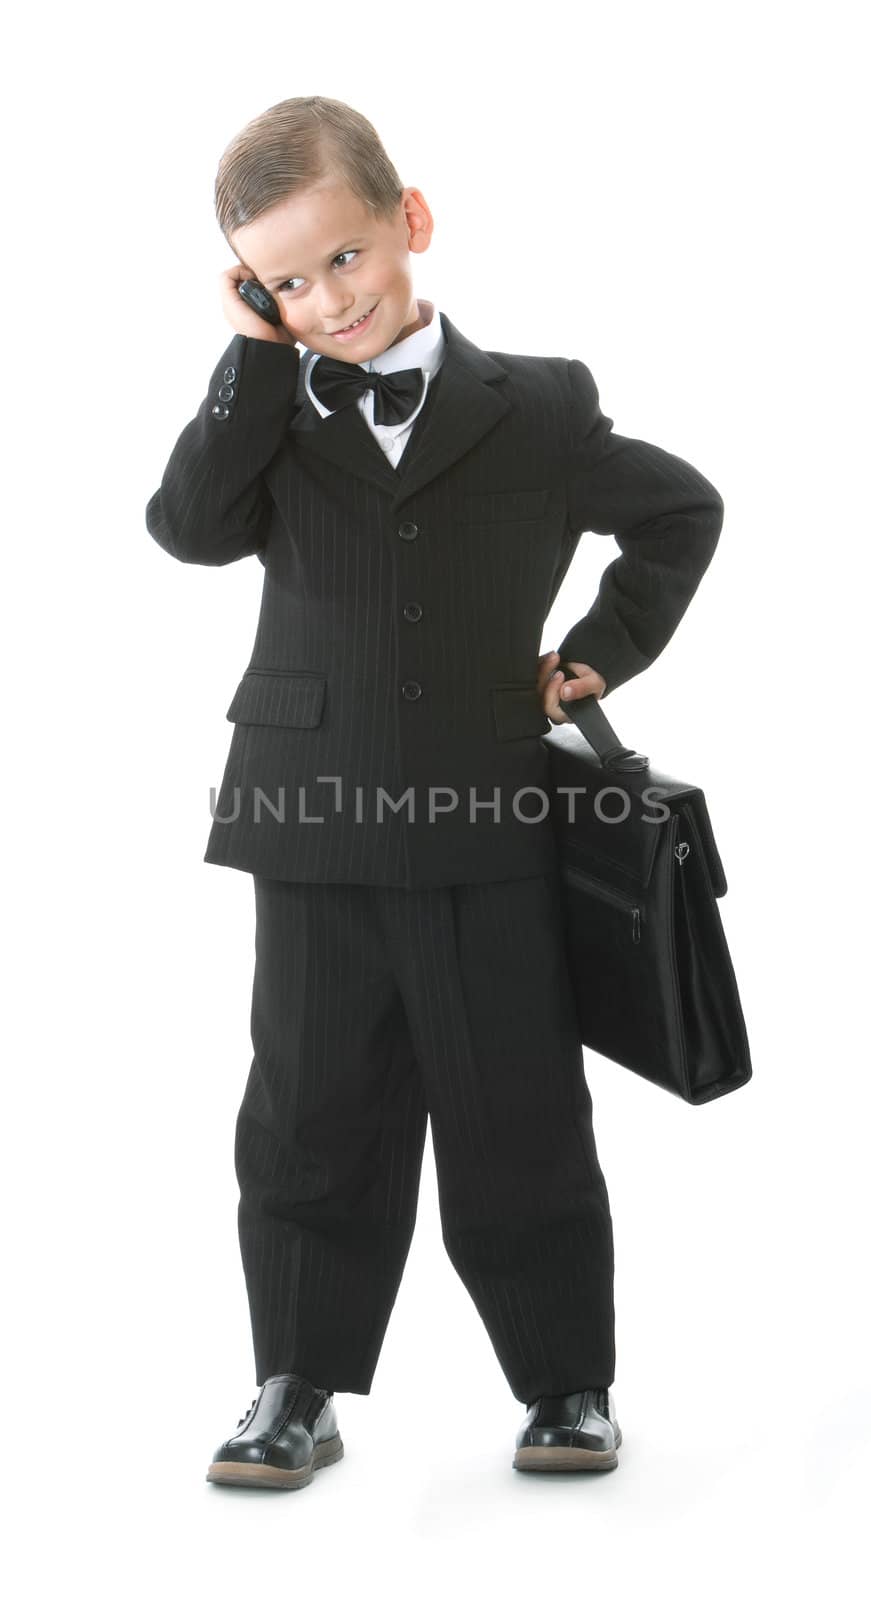 Boy in a suit by bloodua